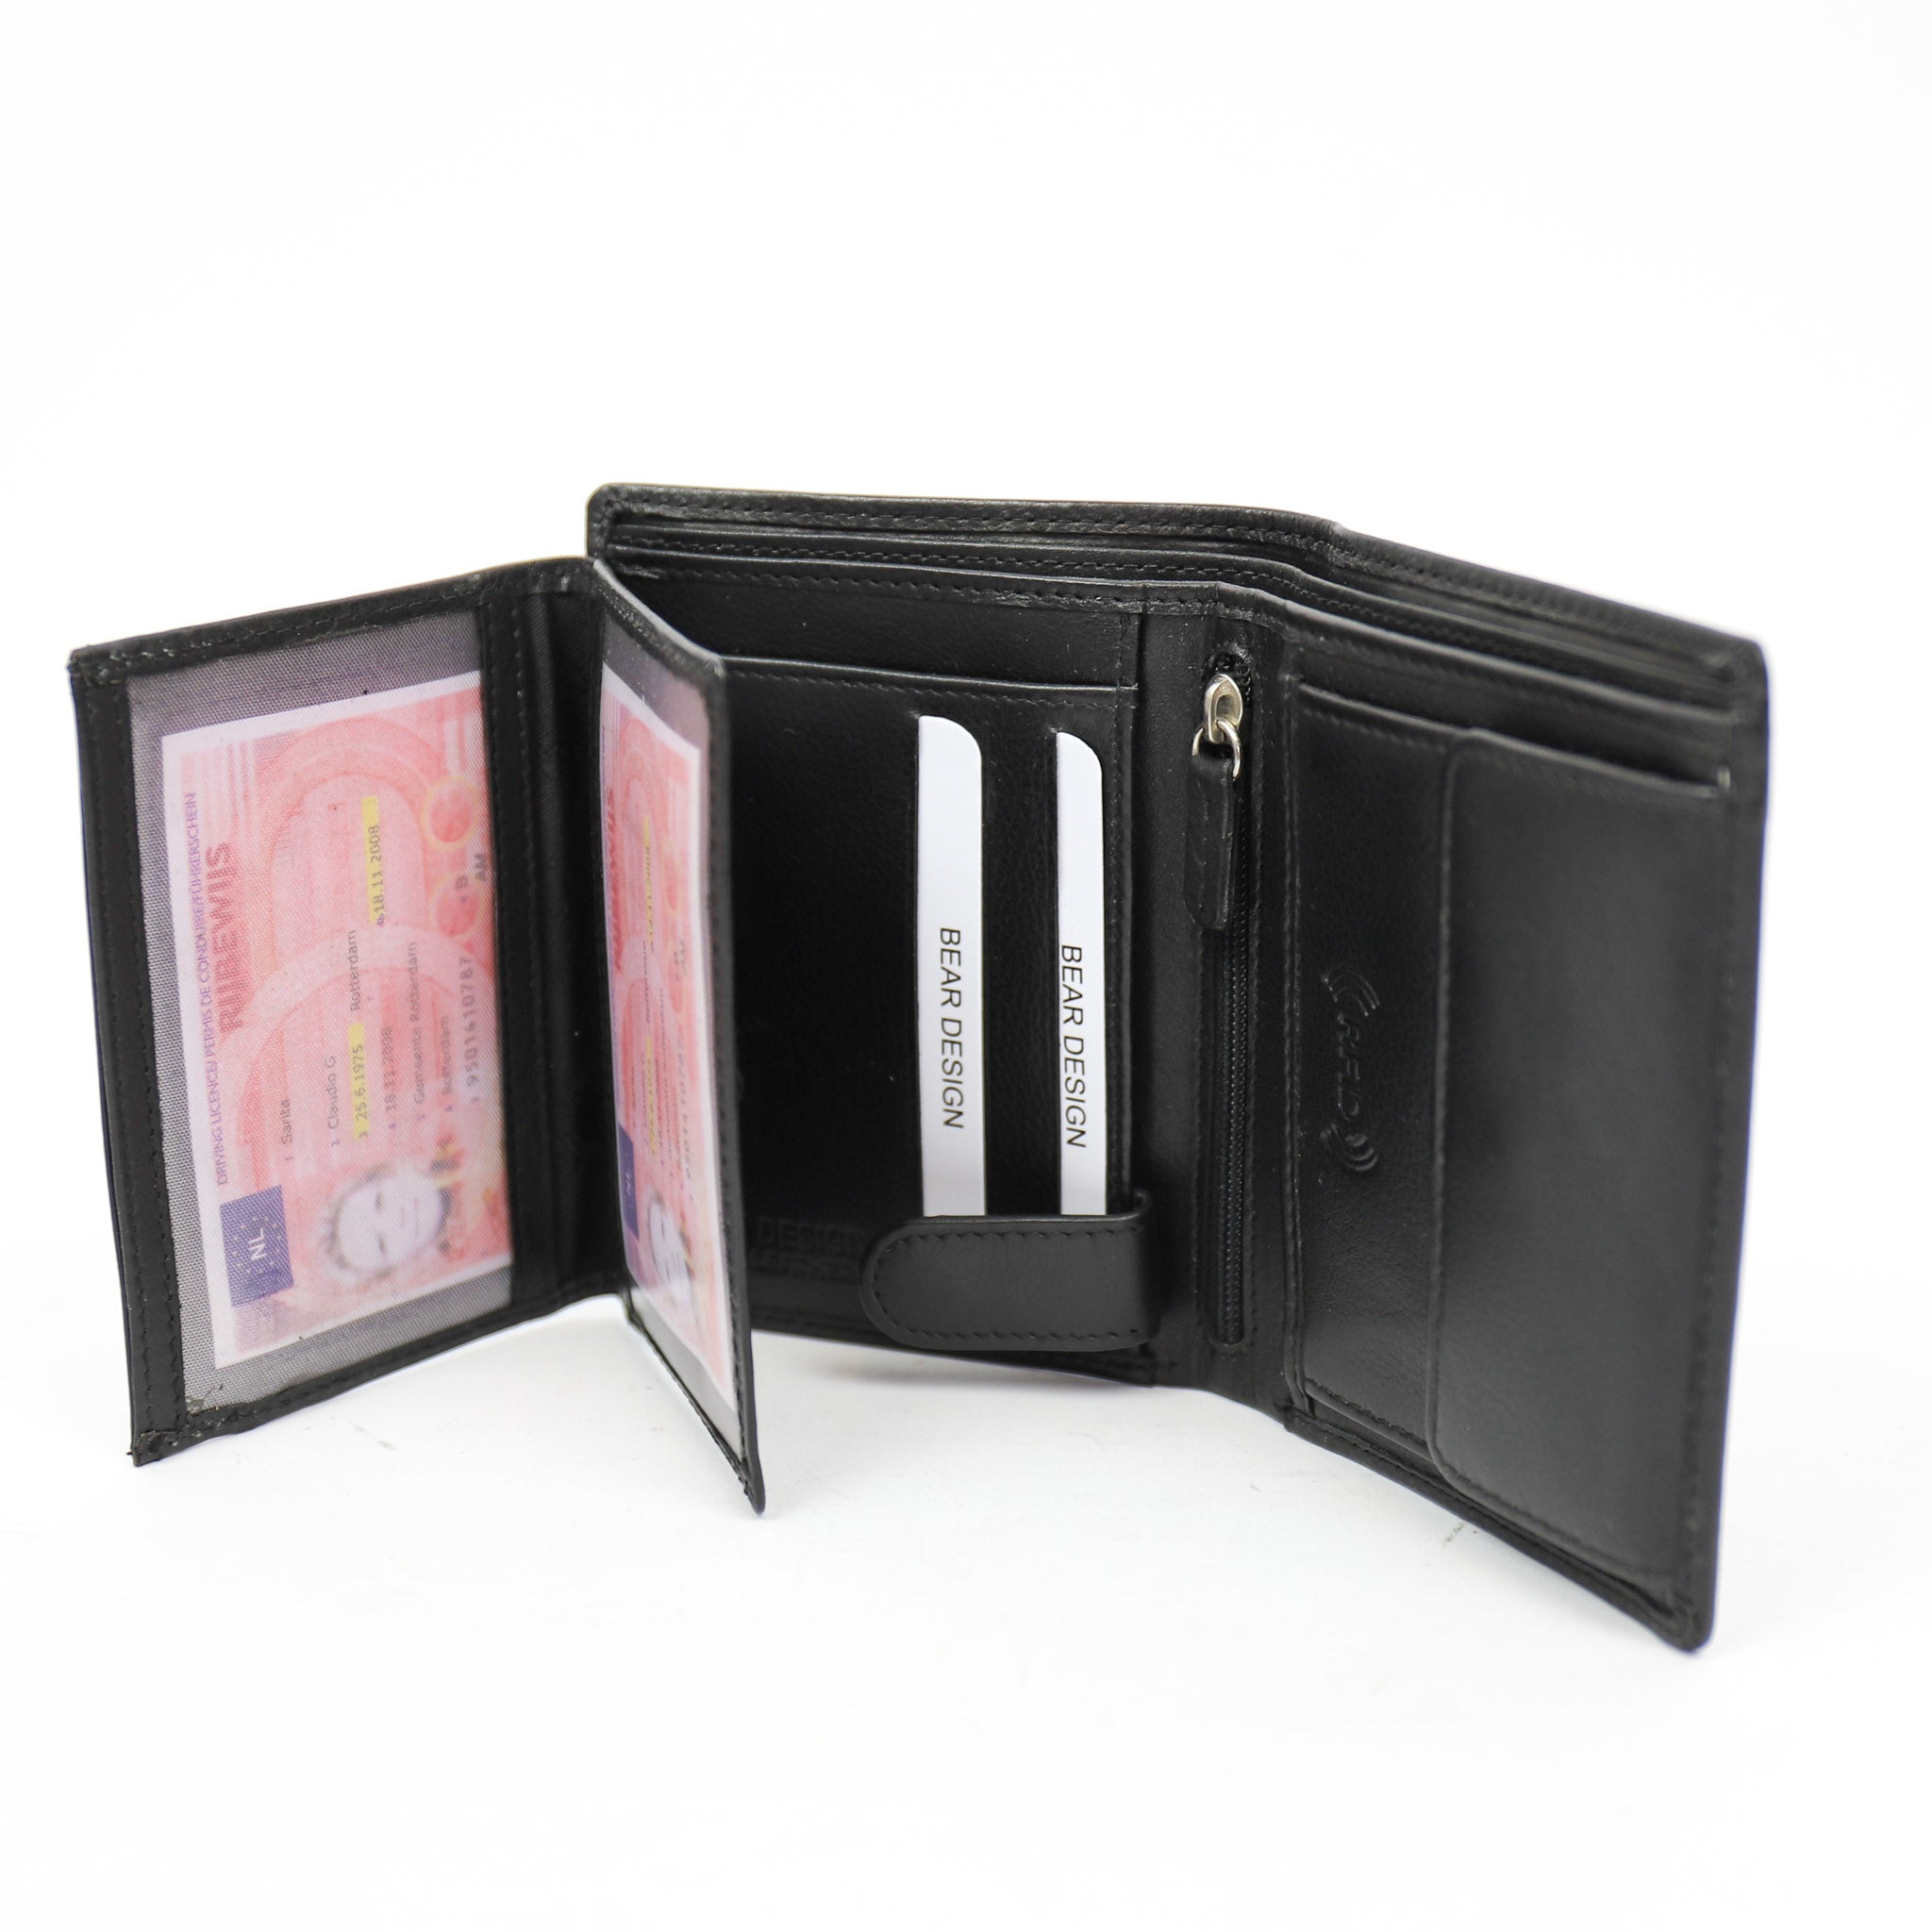 Brieftasche 'Klaas' schwarz - FR 7252